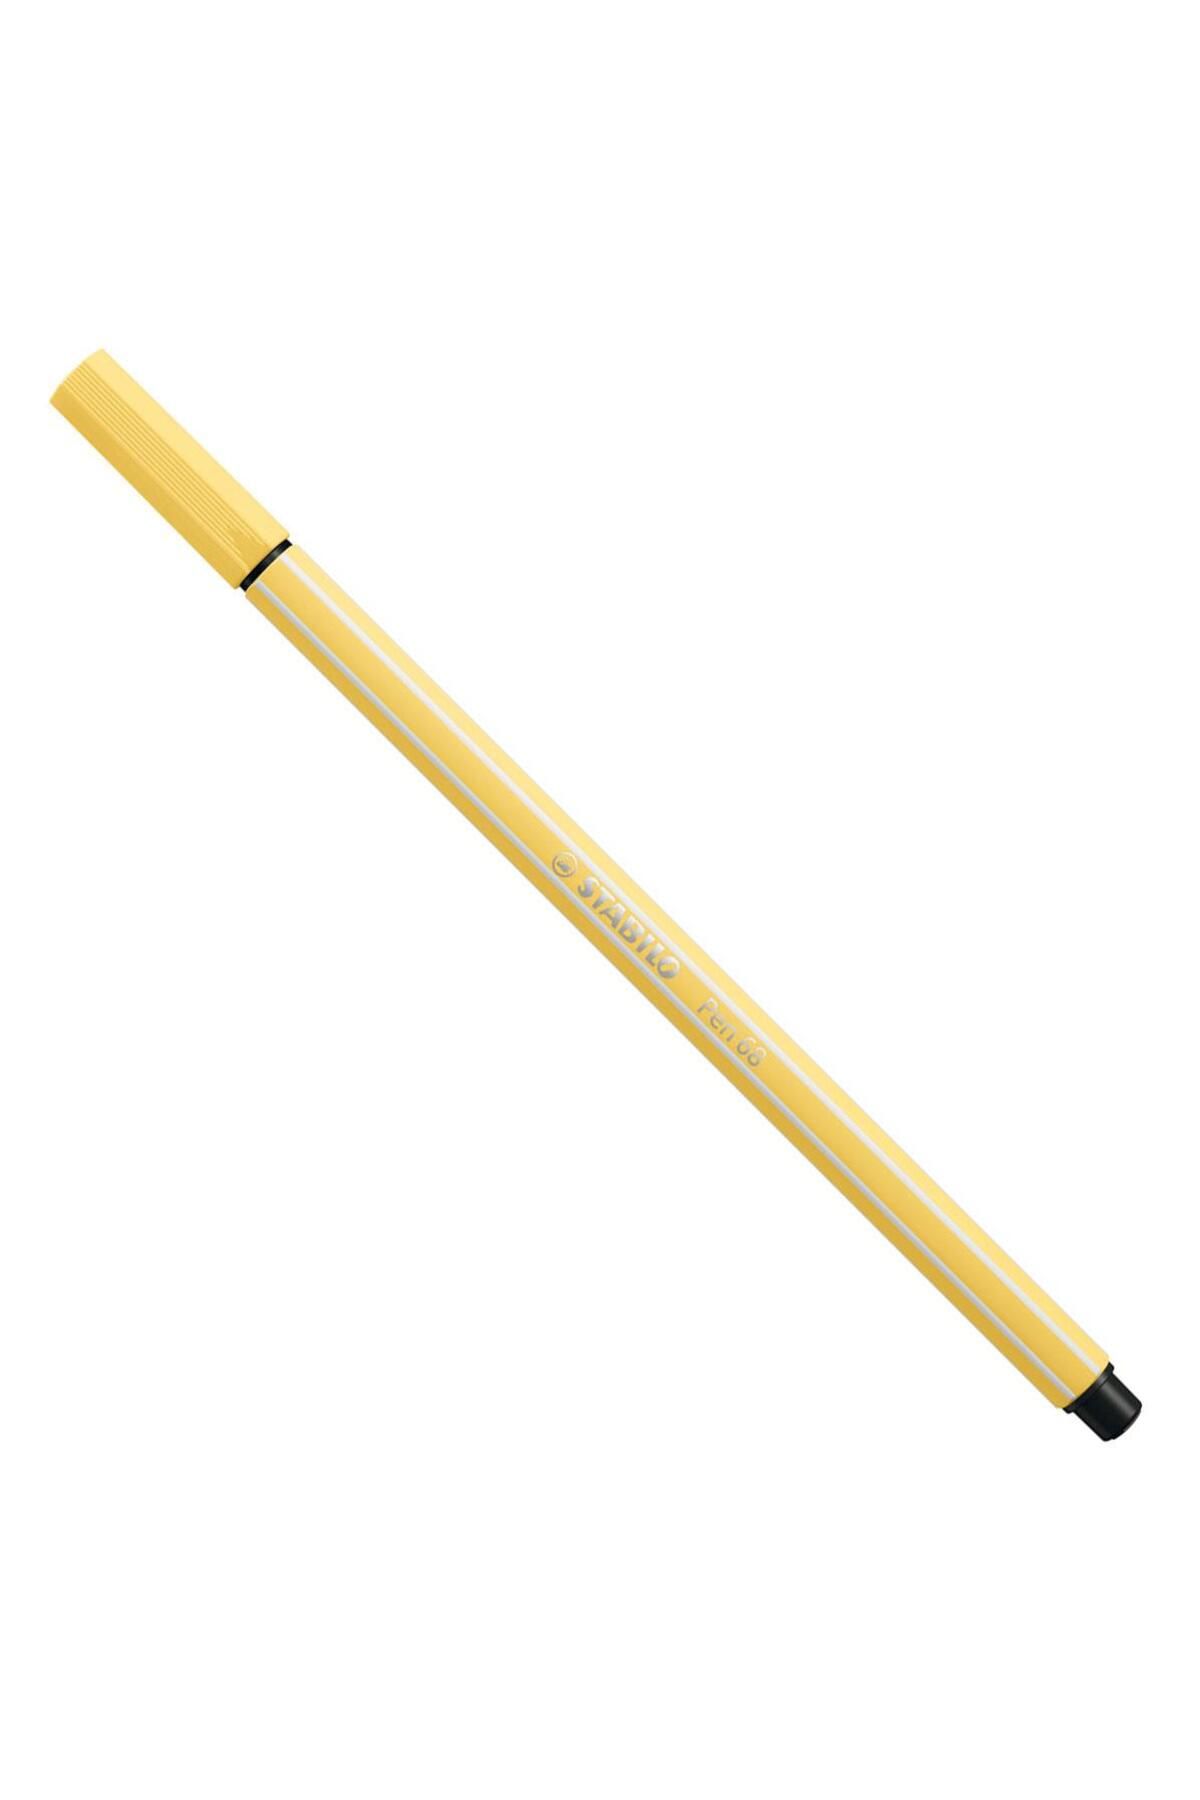 Stabilo Pen 68 Keçeli Boya Kalemi Açık Sarı 68/23 (10 LU PAKET)